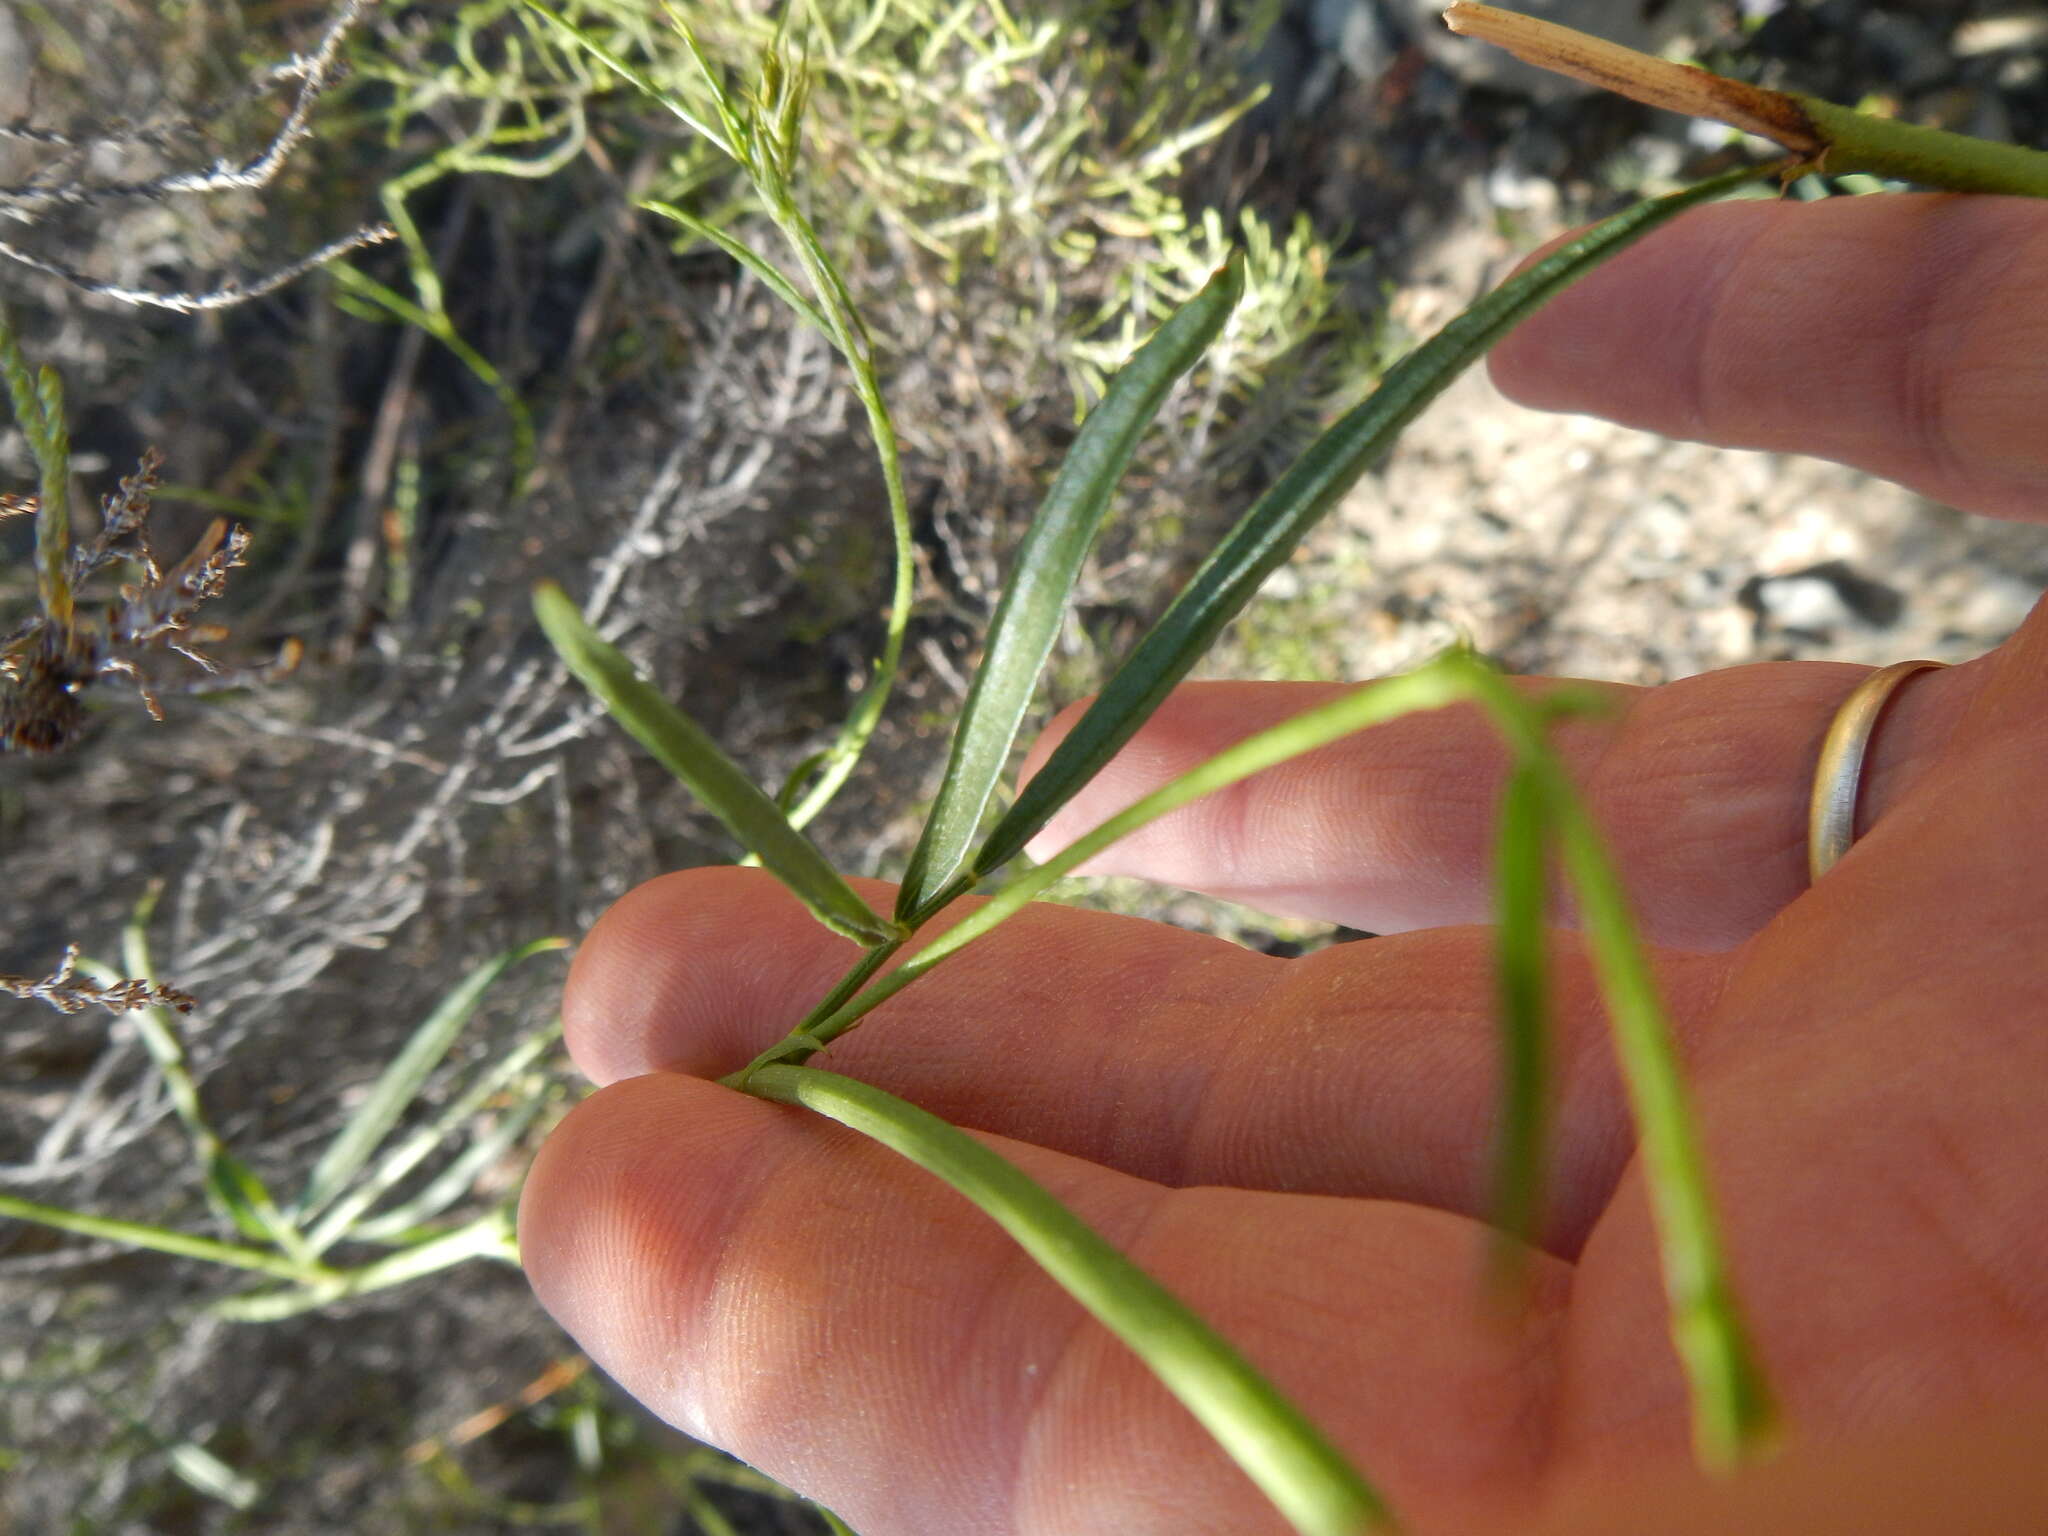 Image of Psoralea ensifolia (Houtt.) Merr.